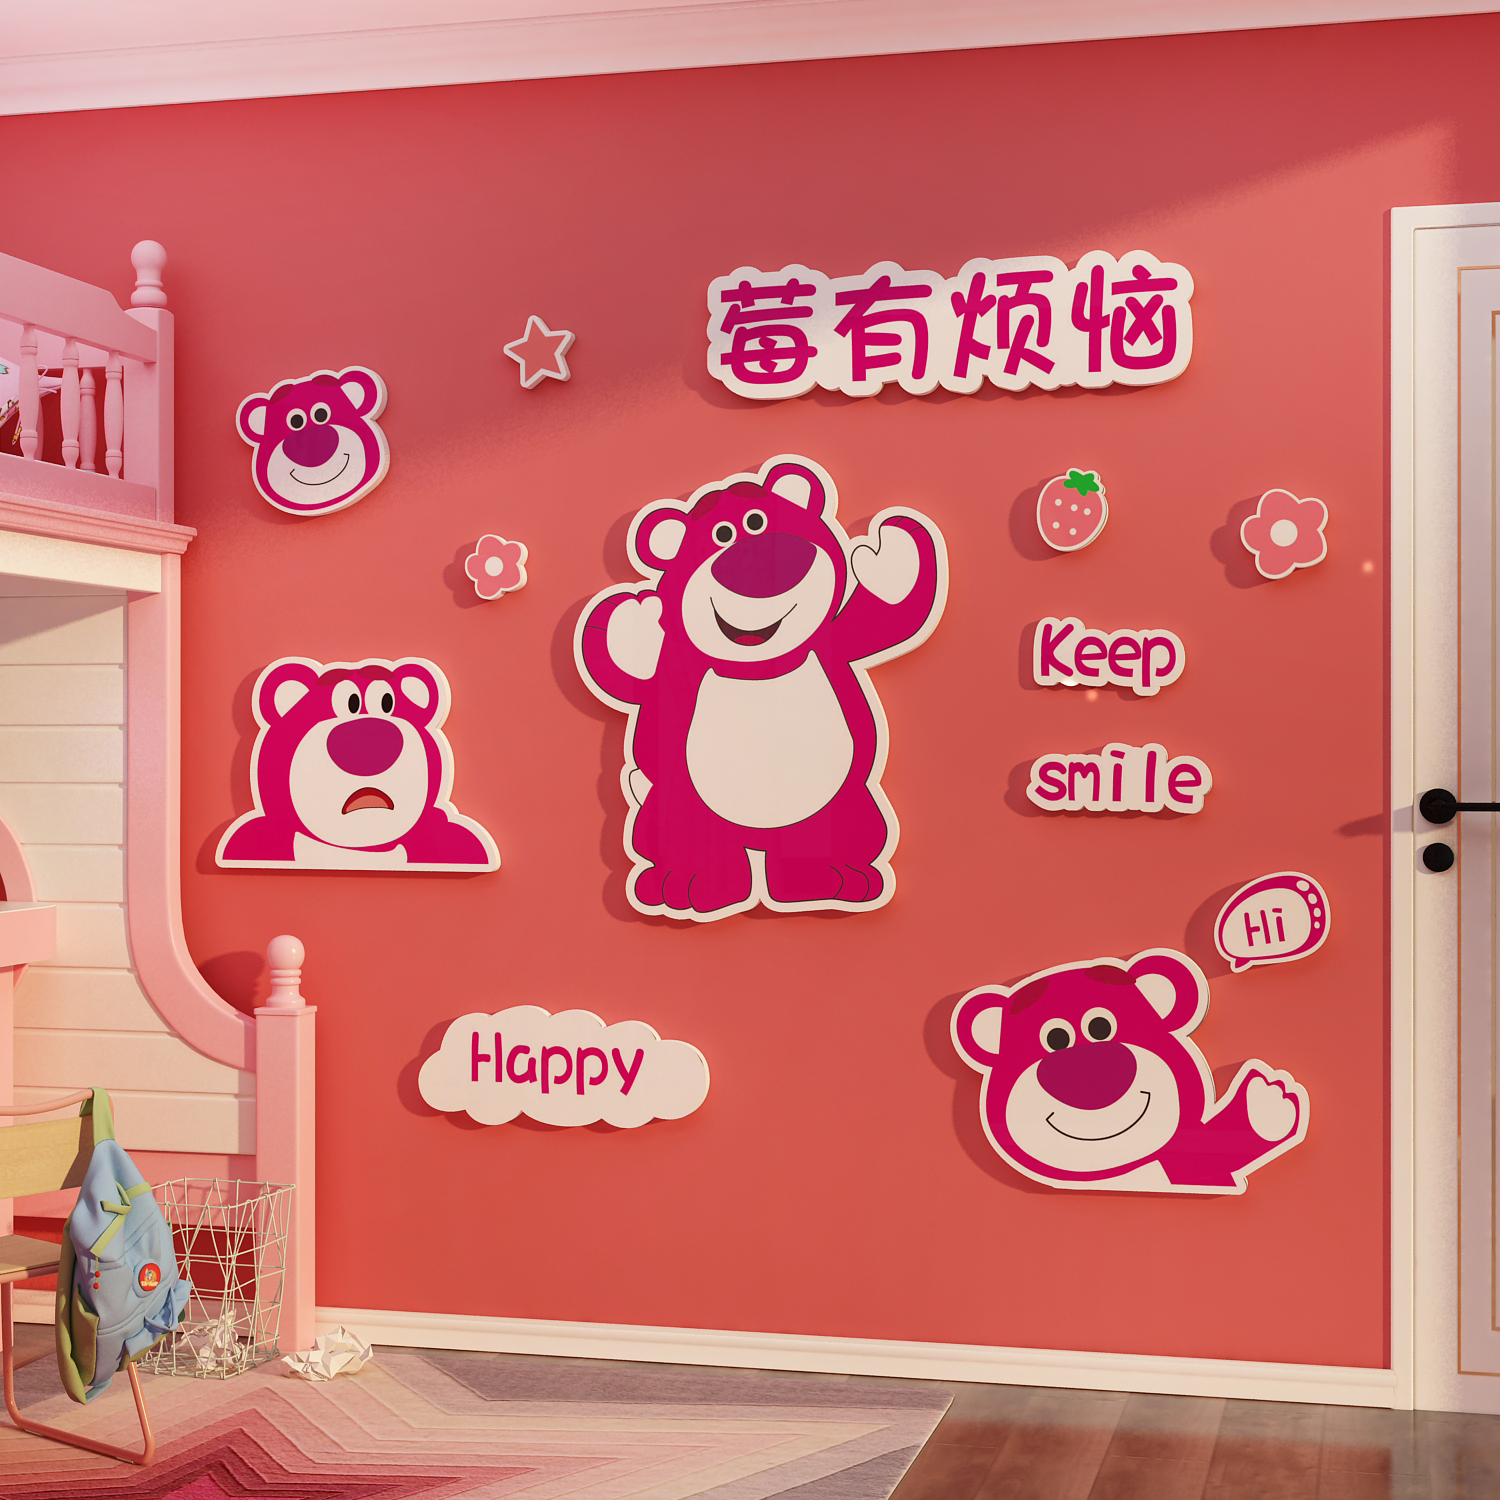 网红儿童小房间布置墙面装饰改造用品草莓熊公主卧室壁纸画客餐厅